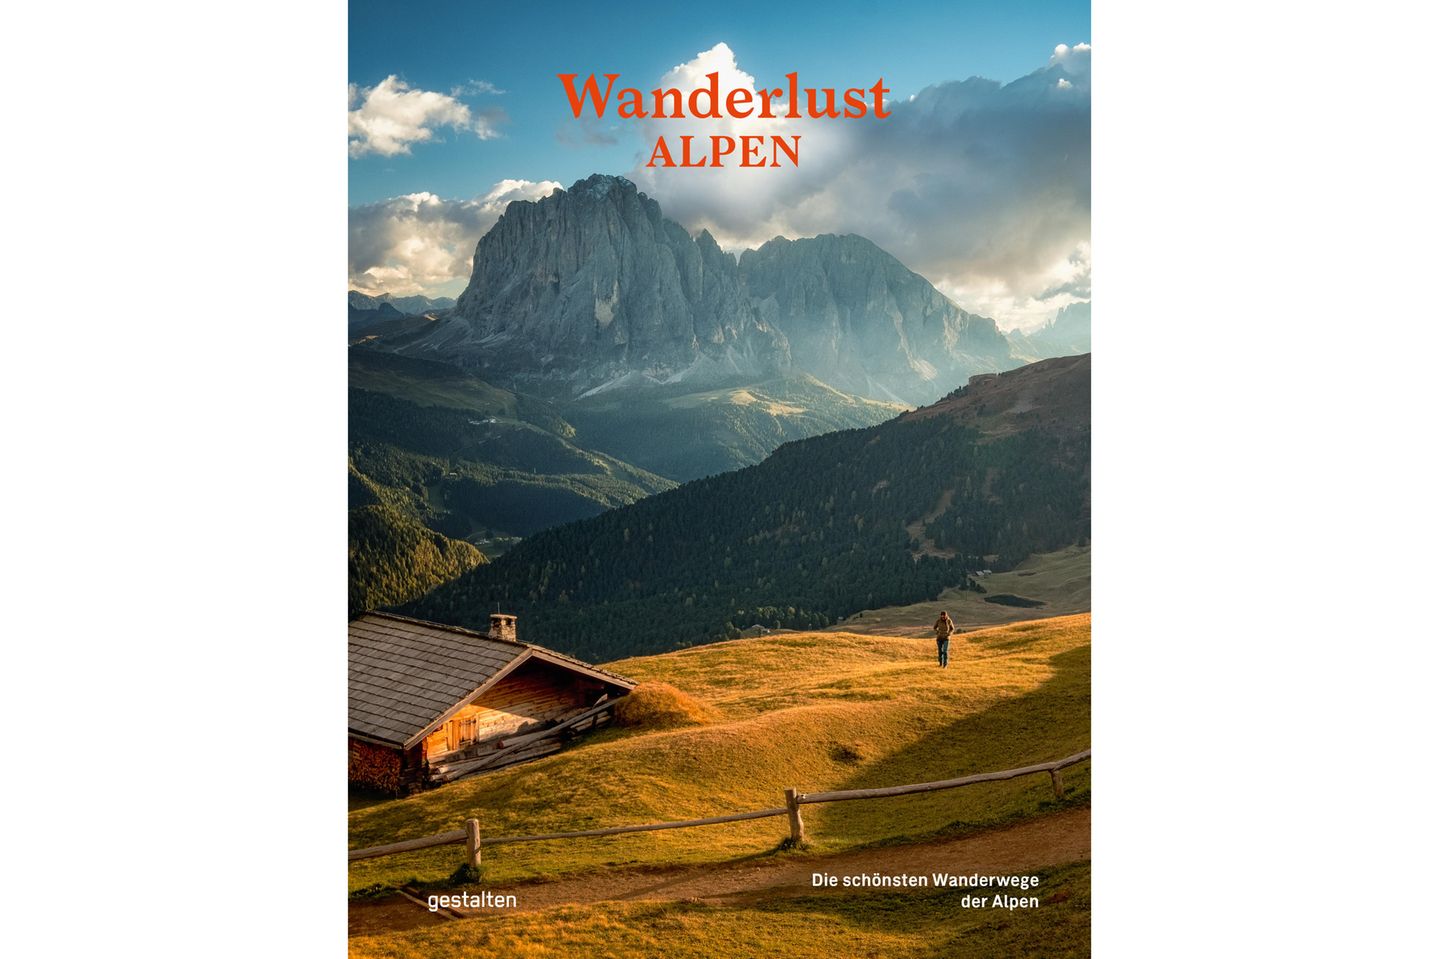 Die schönsten Wander-Touren im Alpenraum stellt der großformatige und liebevoll gestaltete Bildband Wanderlust Alpen aus dem gestalten-Verlag mit opulenten Bilder und ausführlichen Streckenbeschreibungen vor. Kostenpunkt: 39.90 €